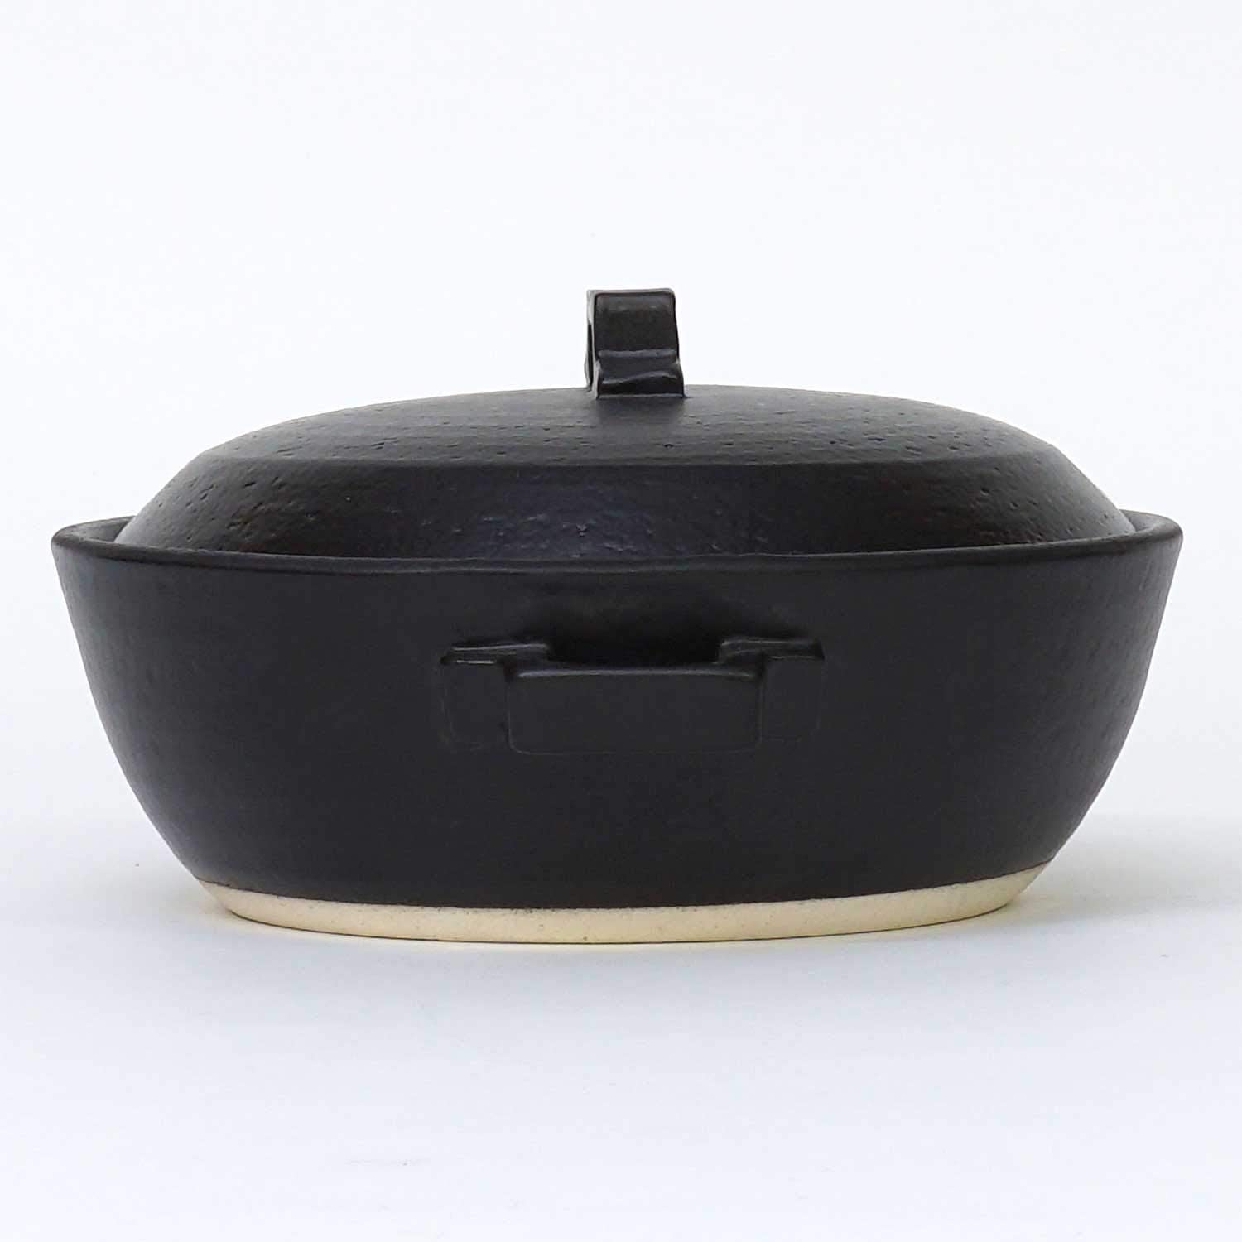 マルヨシ陶器(Maruyoshitouki) 土鍋 STYLE BLACK M0183の商品画像3 